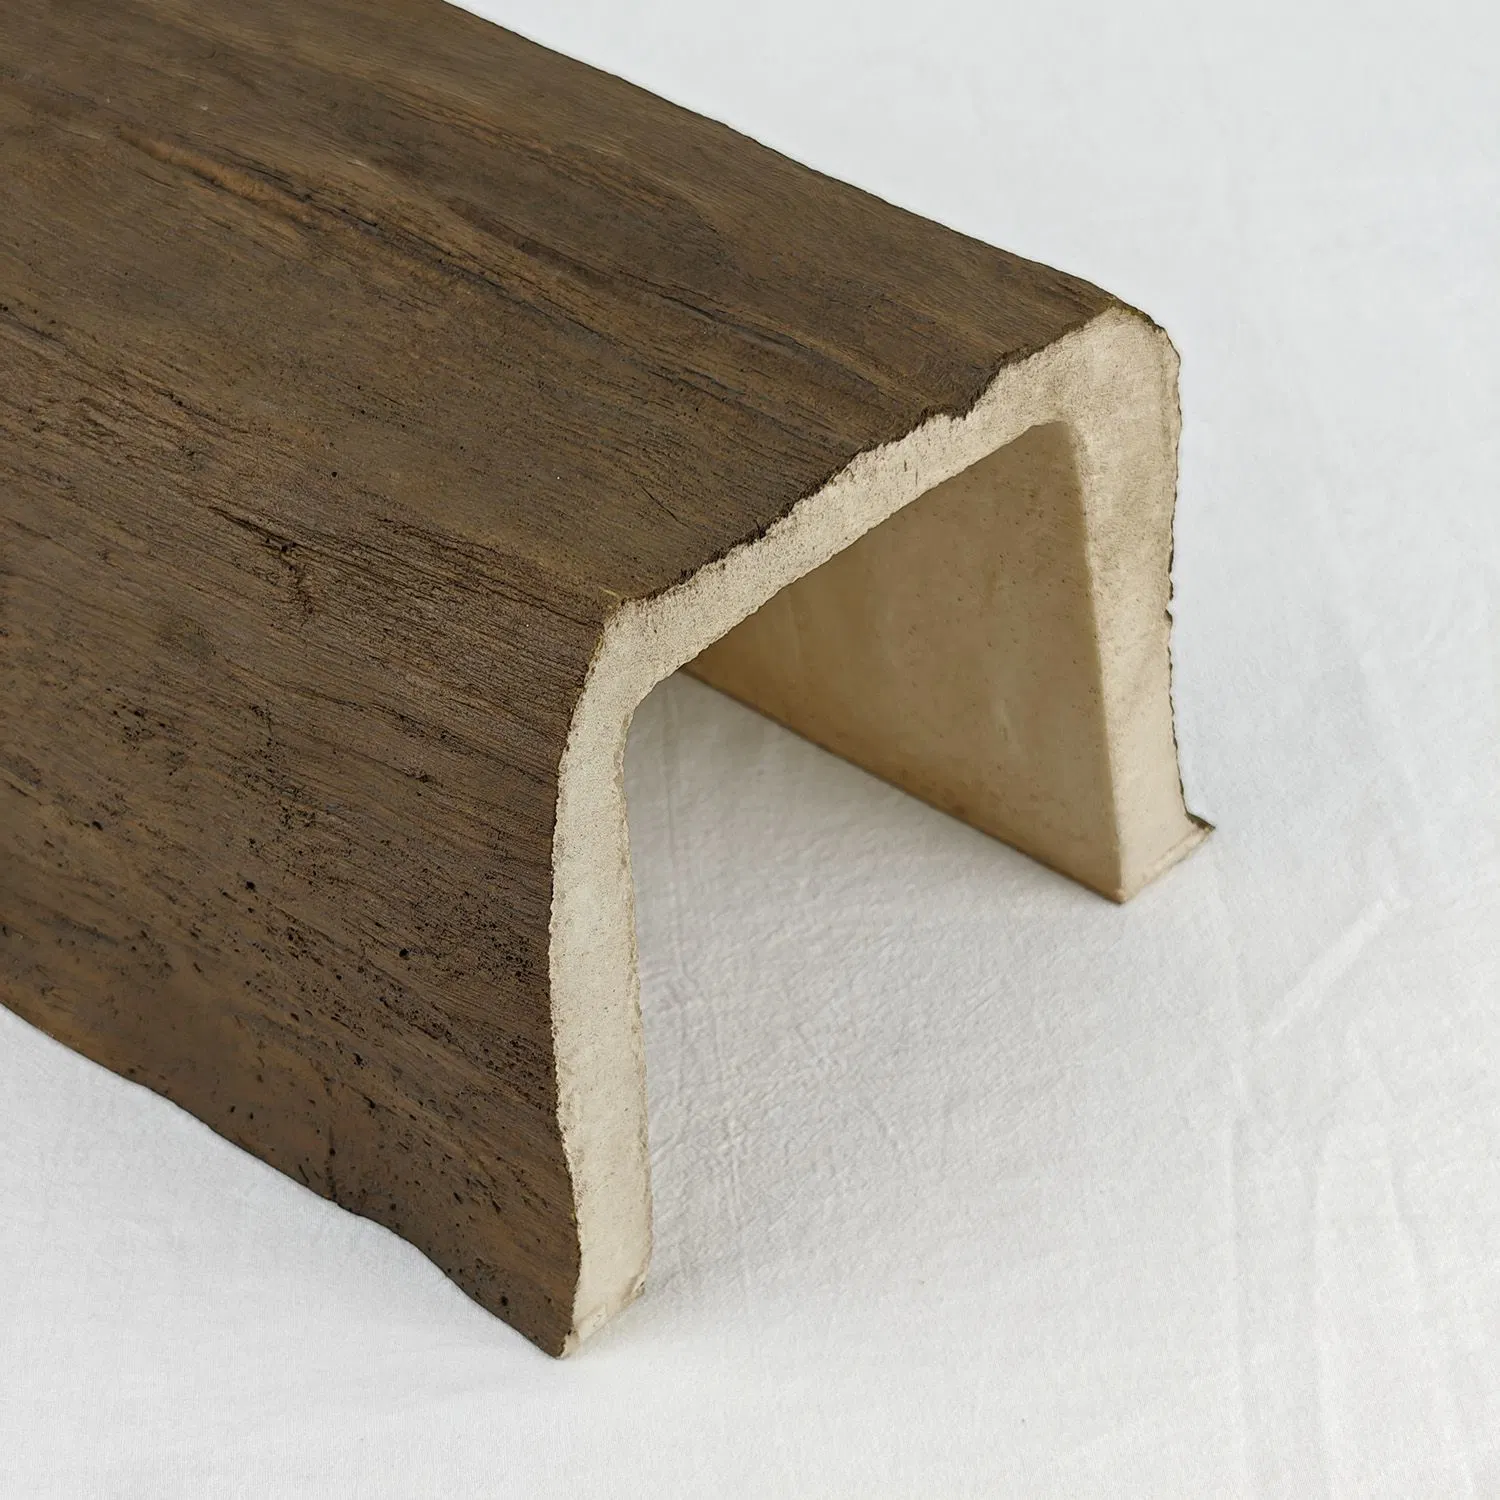 Auuan Китай Производство качество цельные деревянные молдинги Продукция Millwork